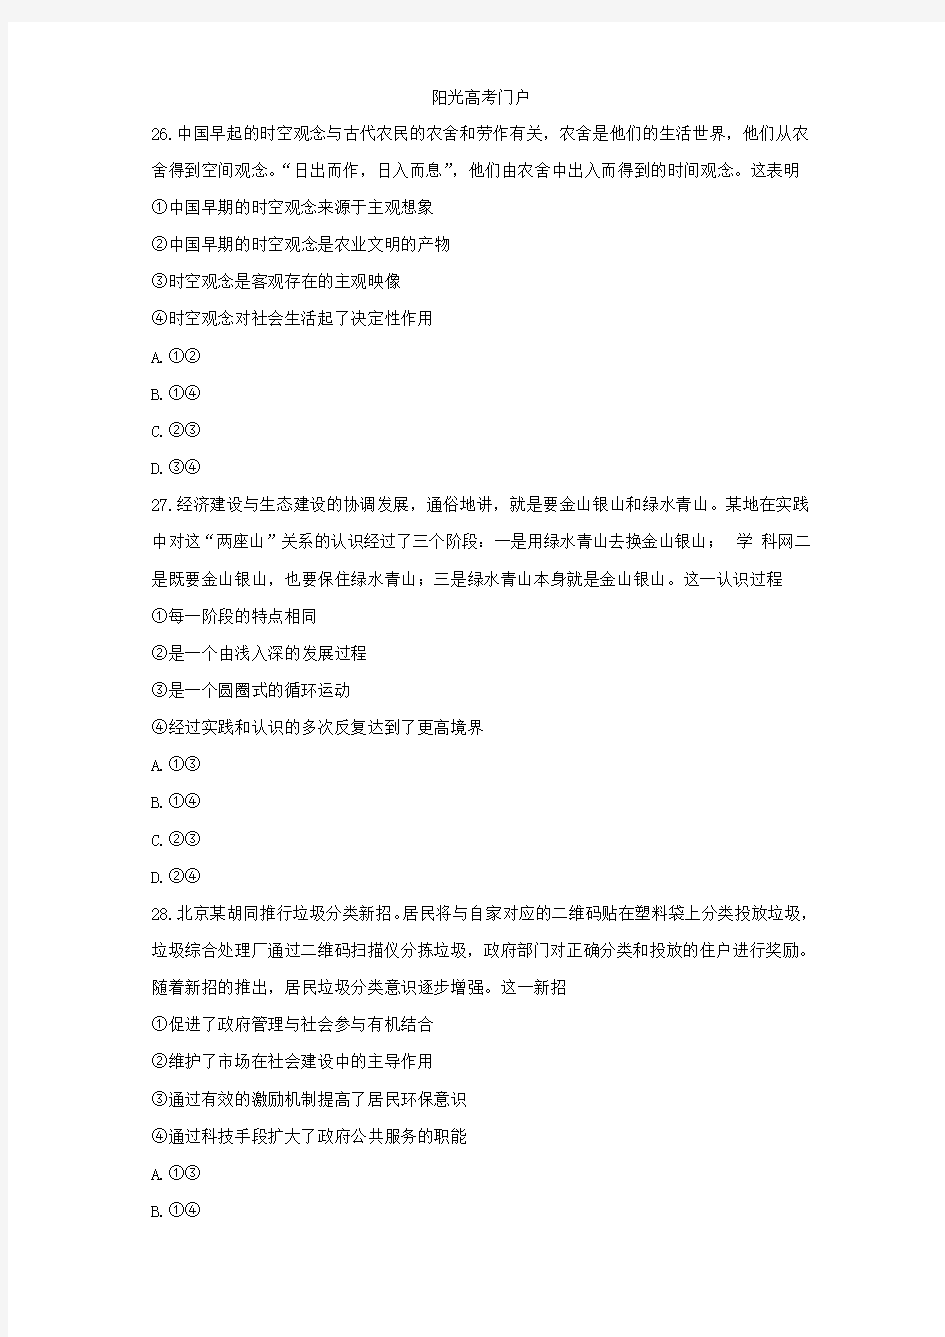 2014北京高考文科综合政治试题答案